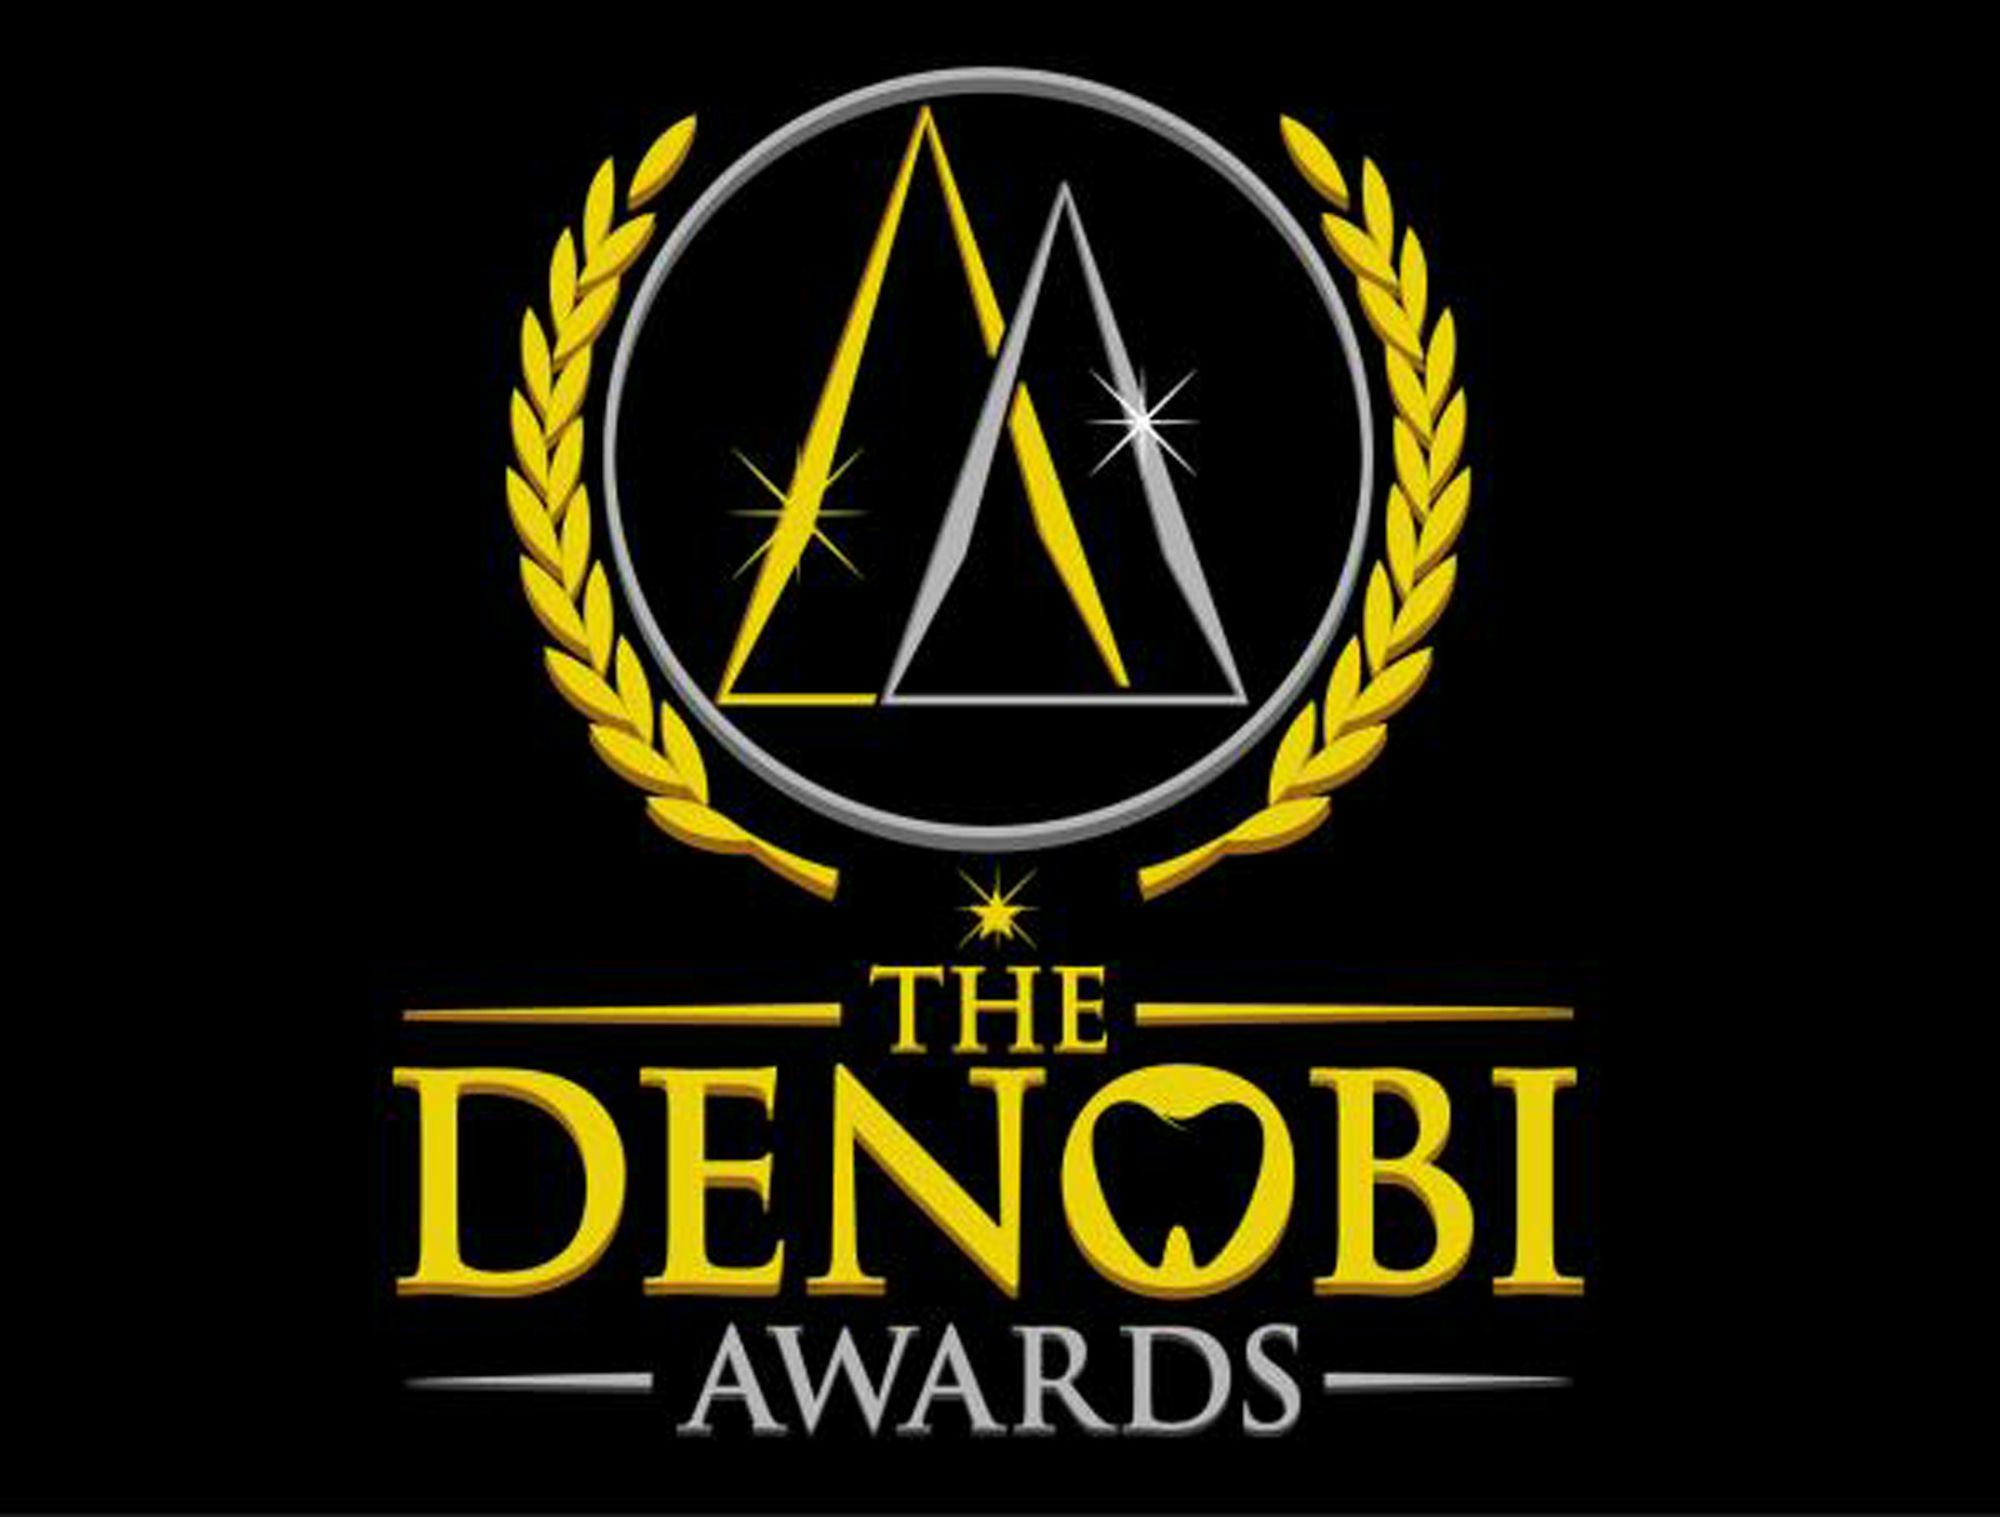 Denobi Awards and Speaking Consulting Network Partner Up for New Rising Star Award. Image: © The Denobi Awards